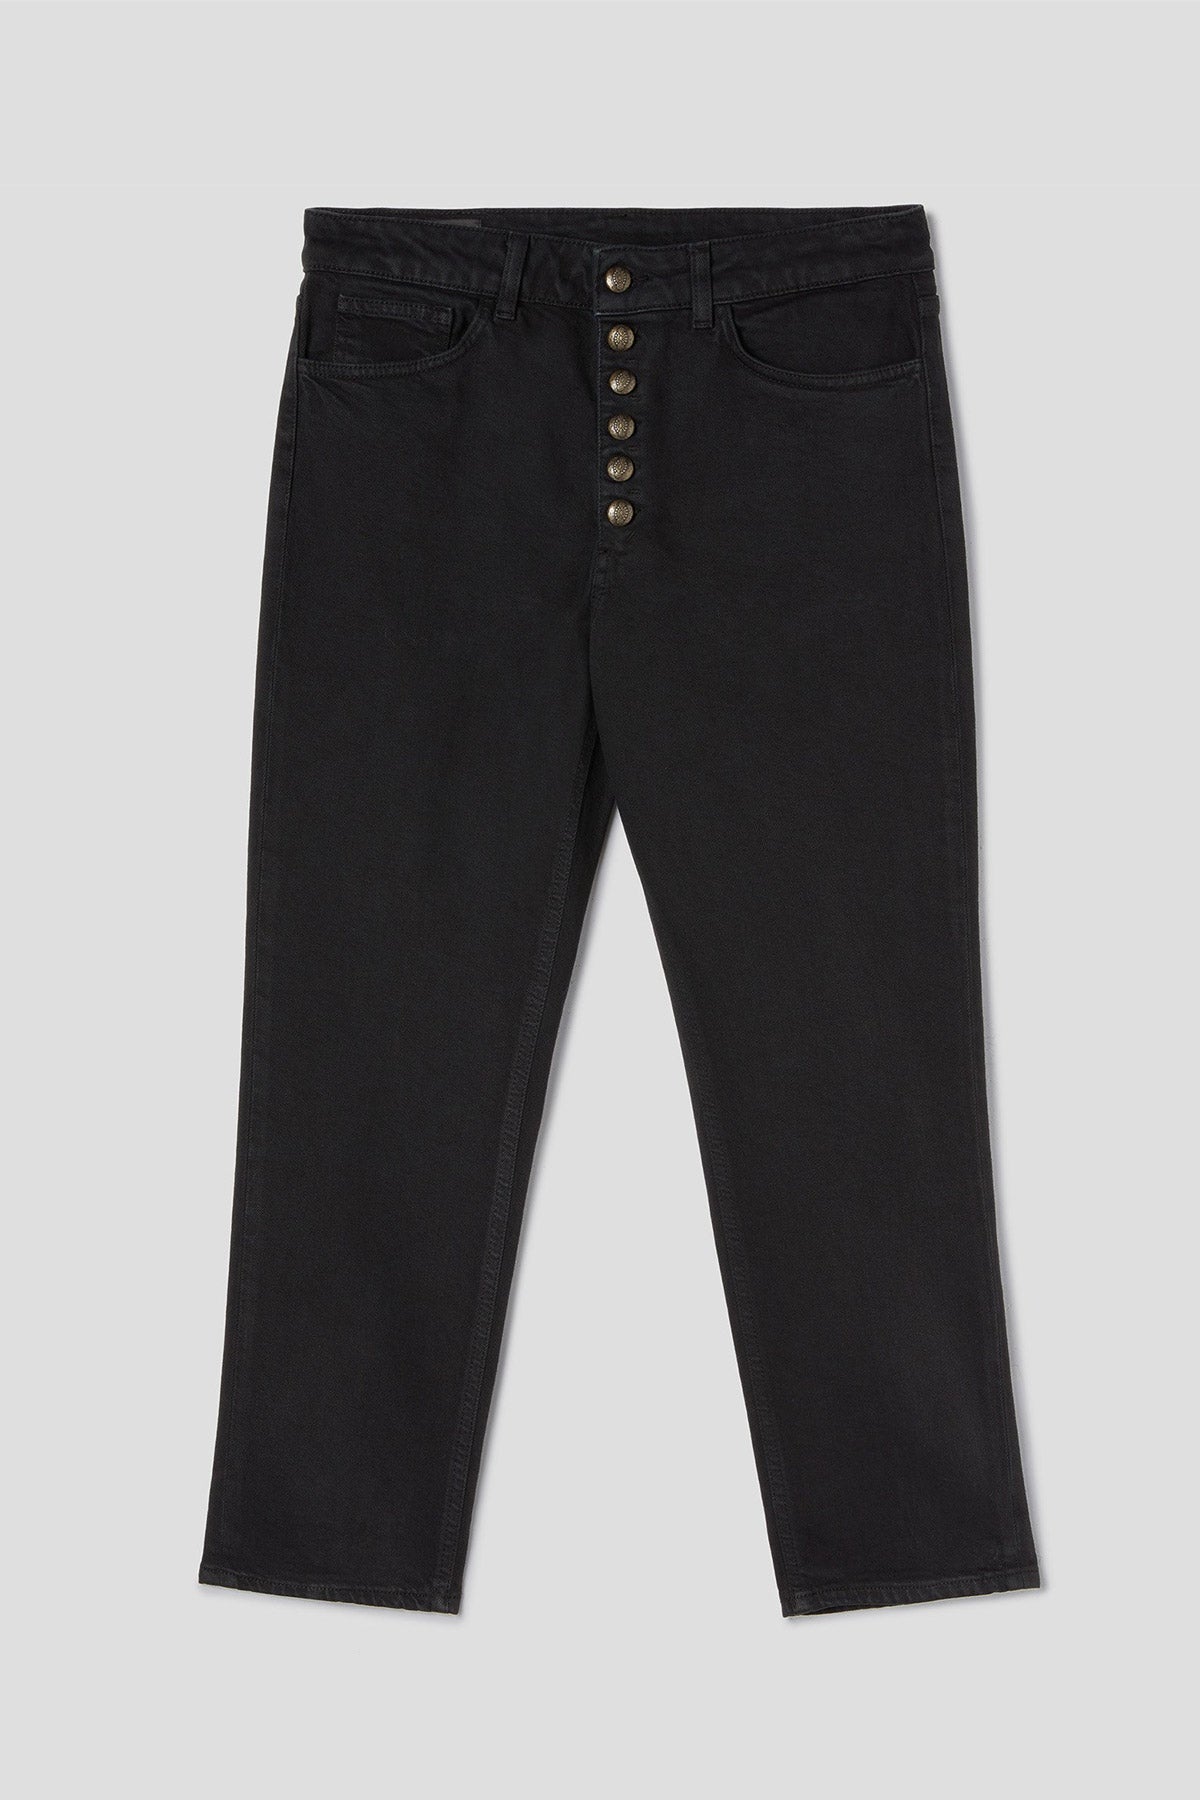 Dondup Loose Fit Koons Yüksek Bel Jeans-Libas Trendy Fashion Store